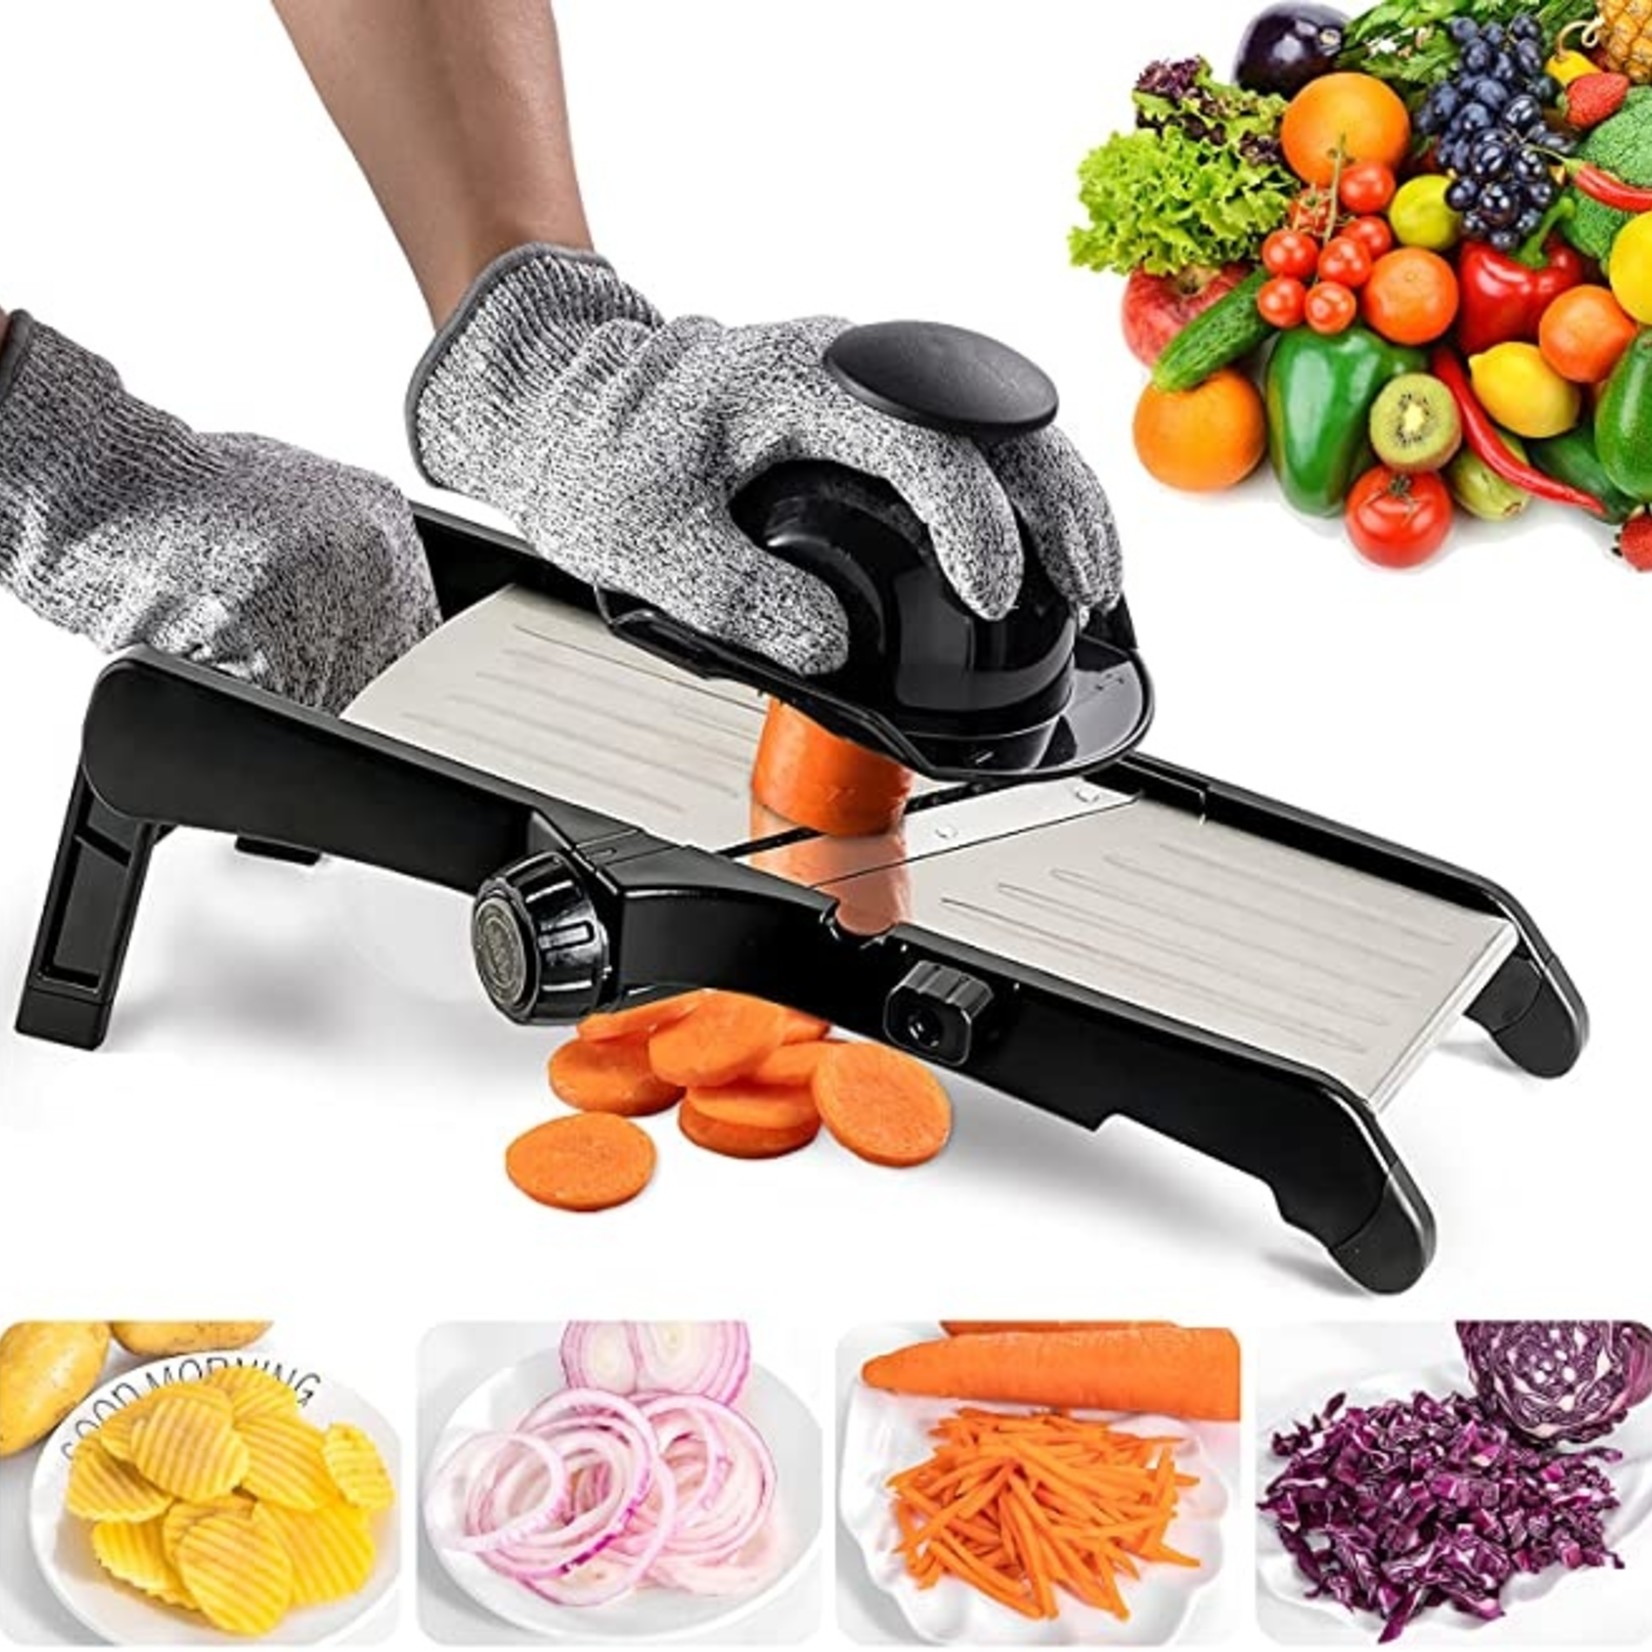 Mandoline Slicer for Food and Vegetables